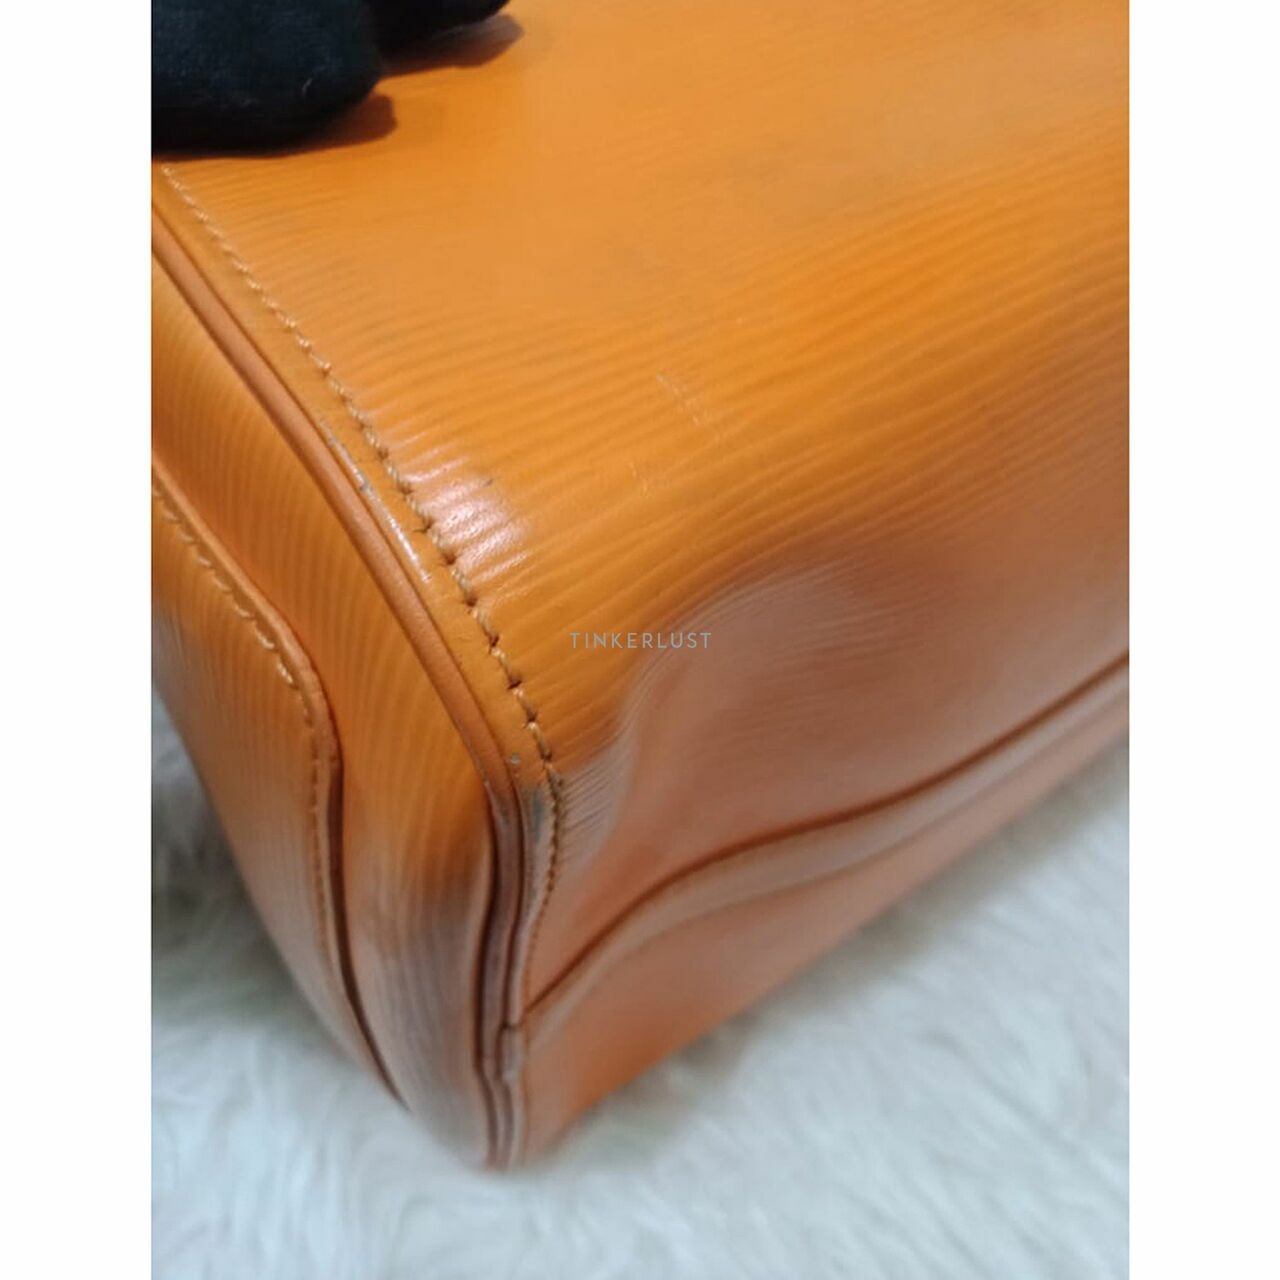 Louis Vuitton Speedy 30 Epi Leather Orange 2013